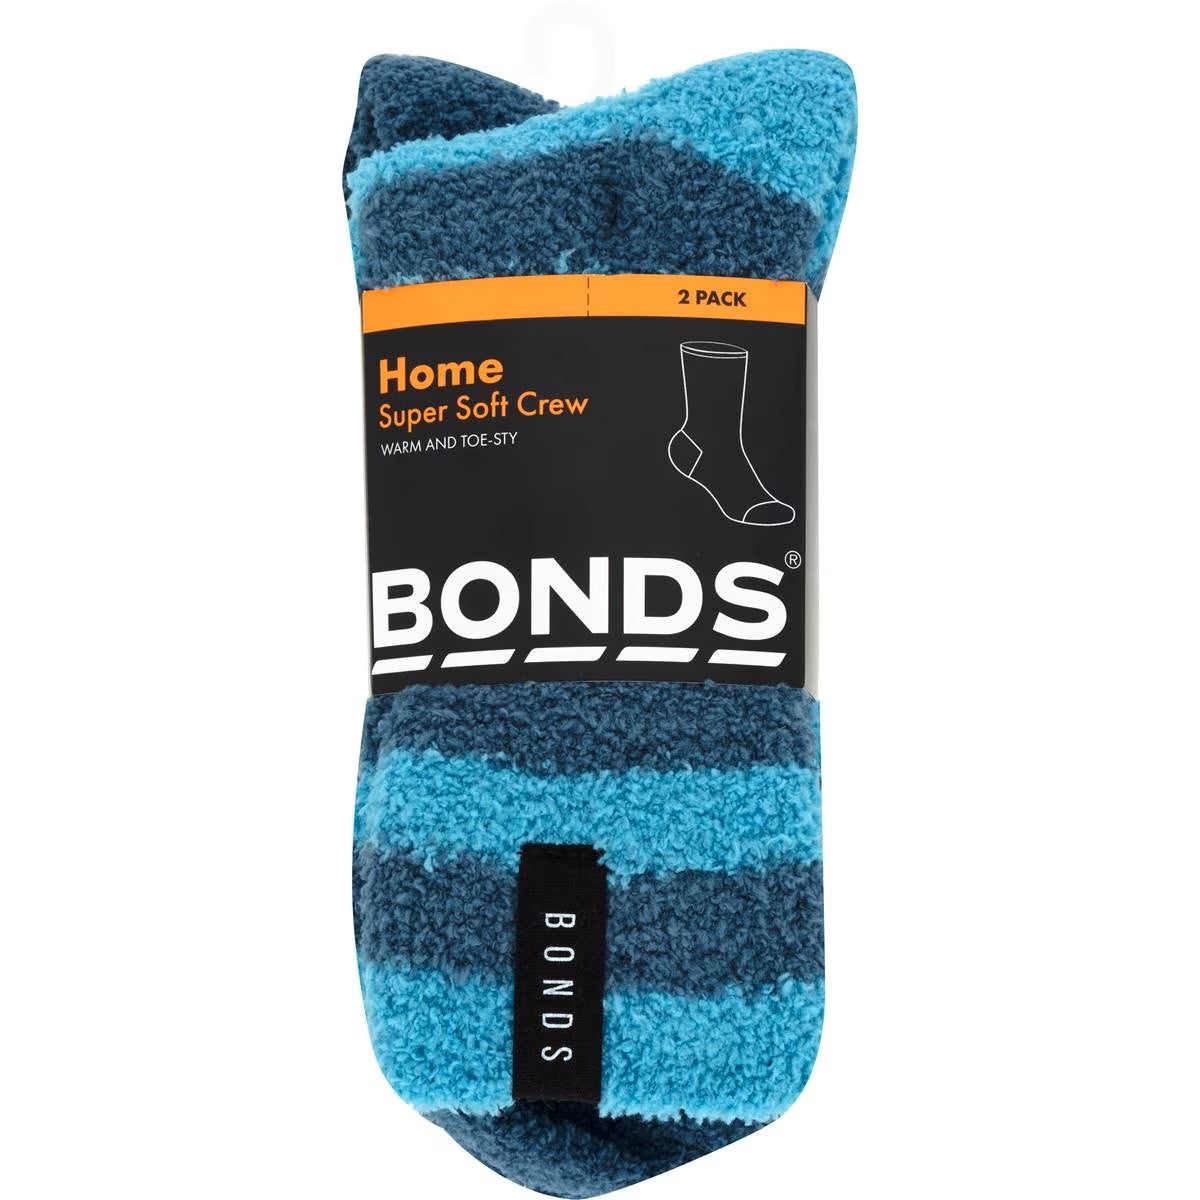 Bonds Kids Supersoft Crew Socks 2 Pack - Blue/Teal